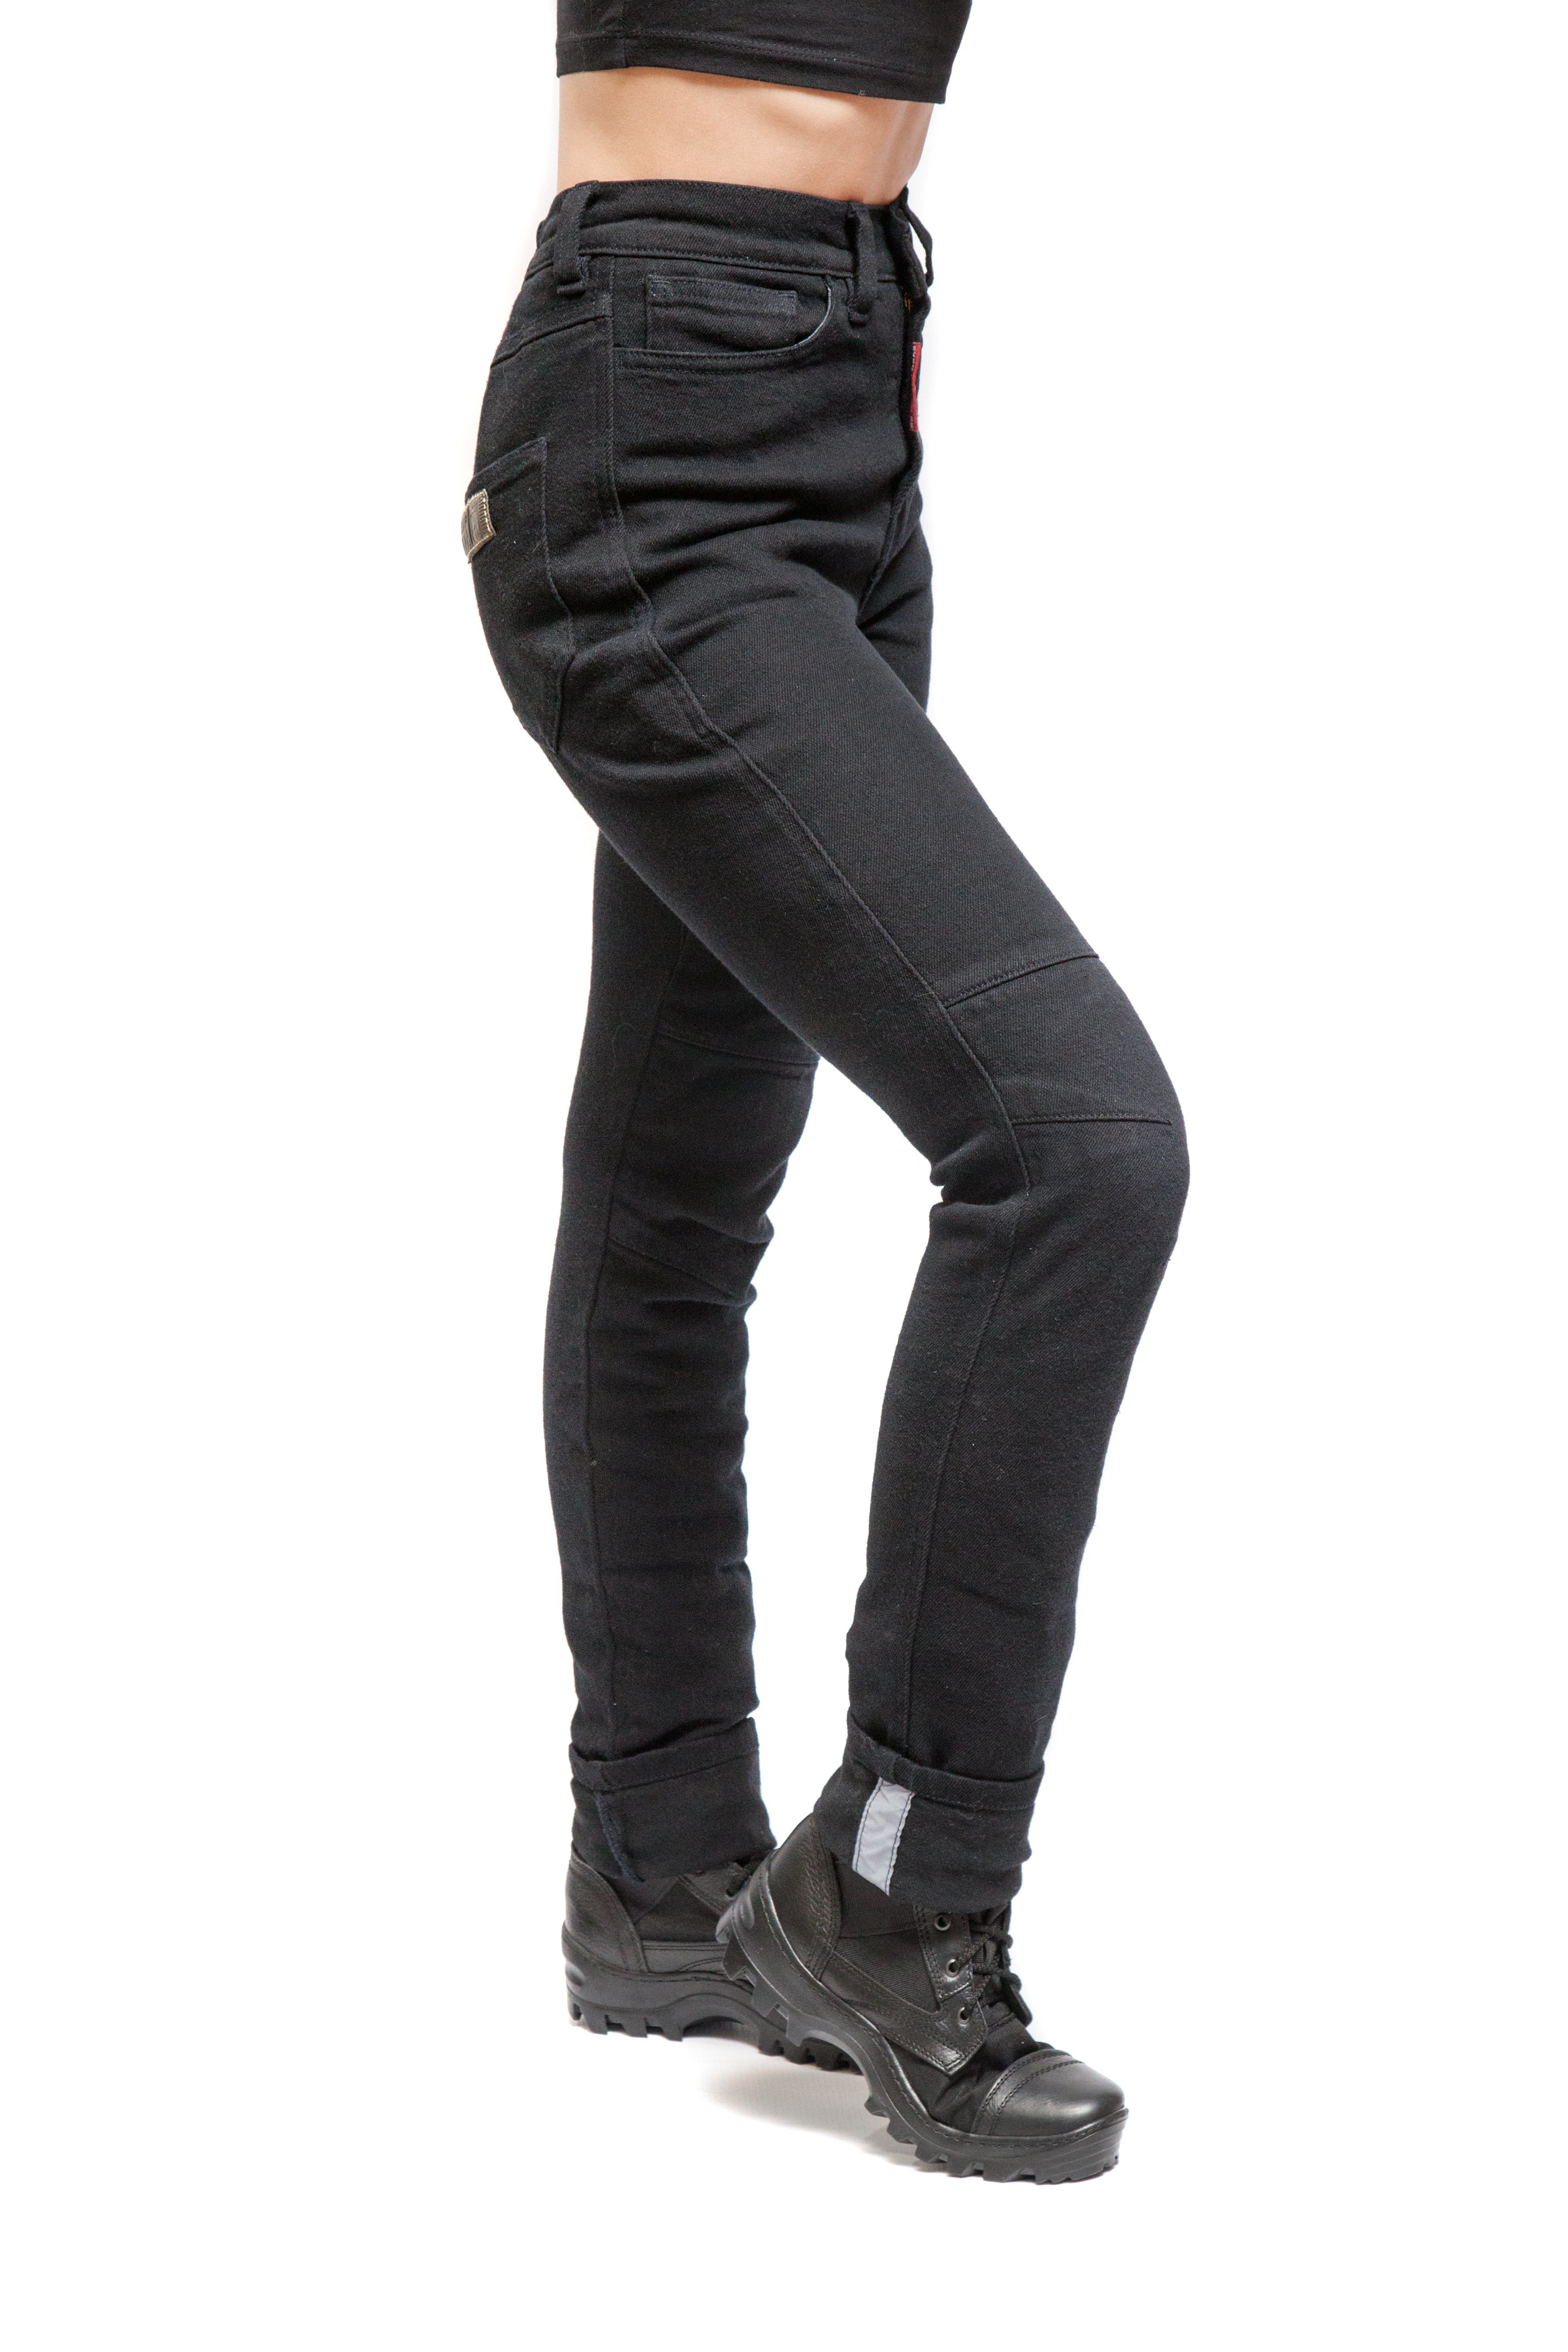 Starks EF56 Zena Stretch Women's Black Motorcycle Jeans - Buy in